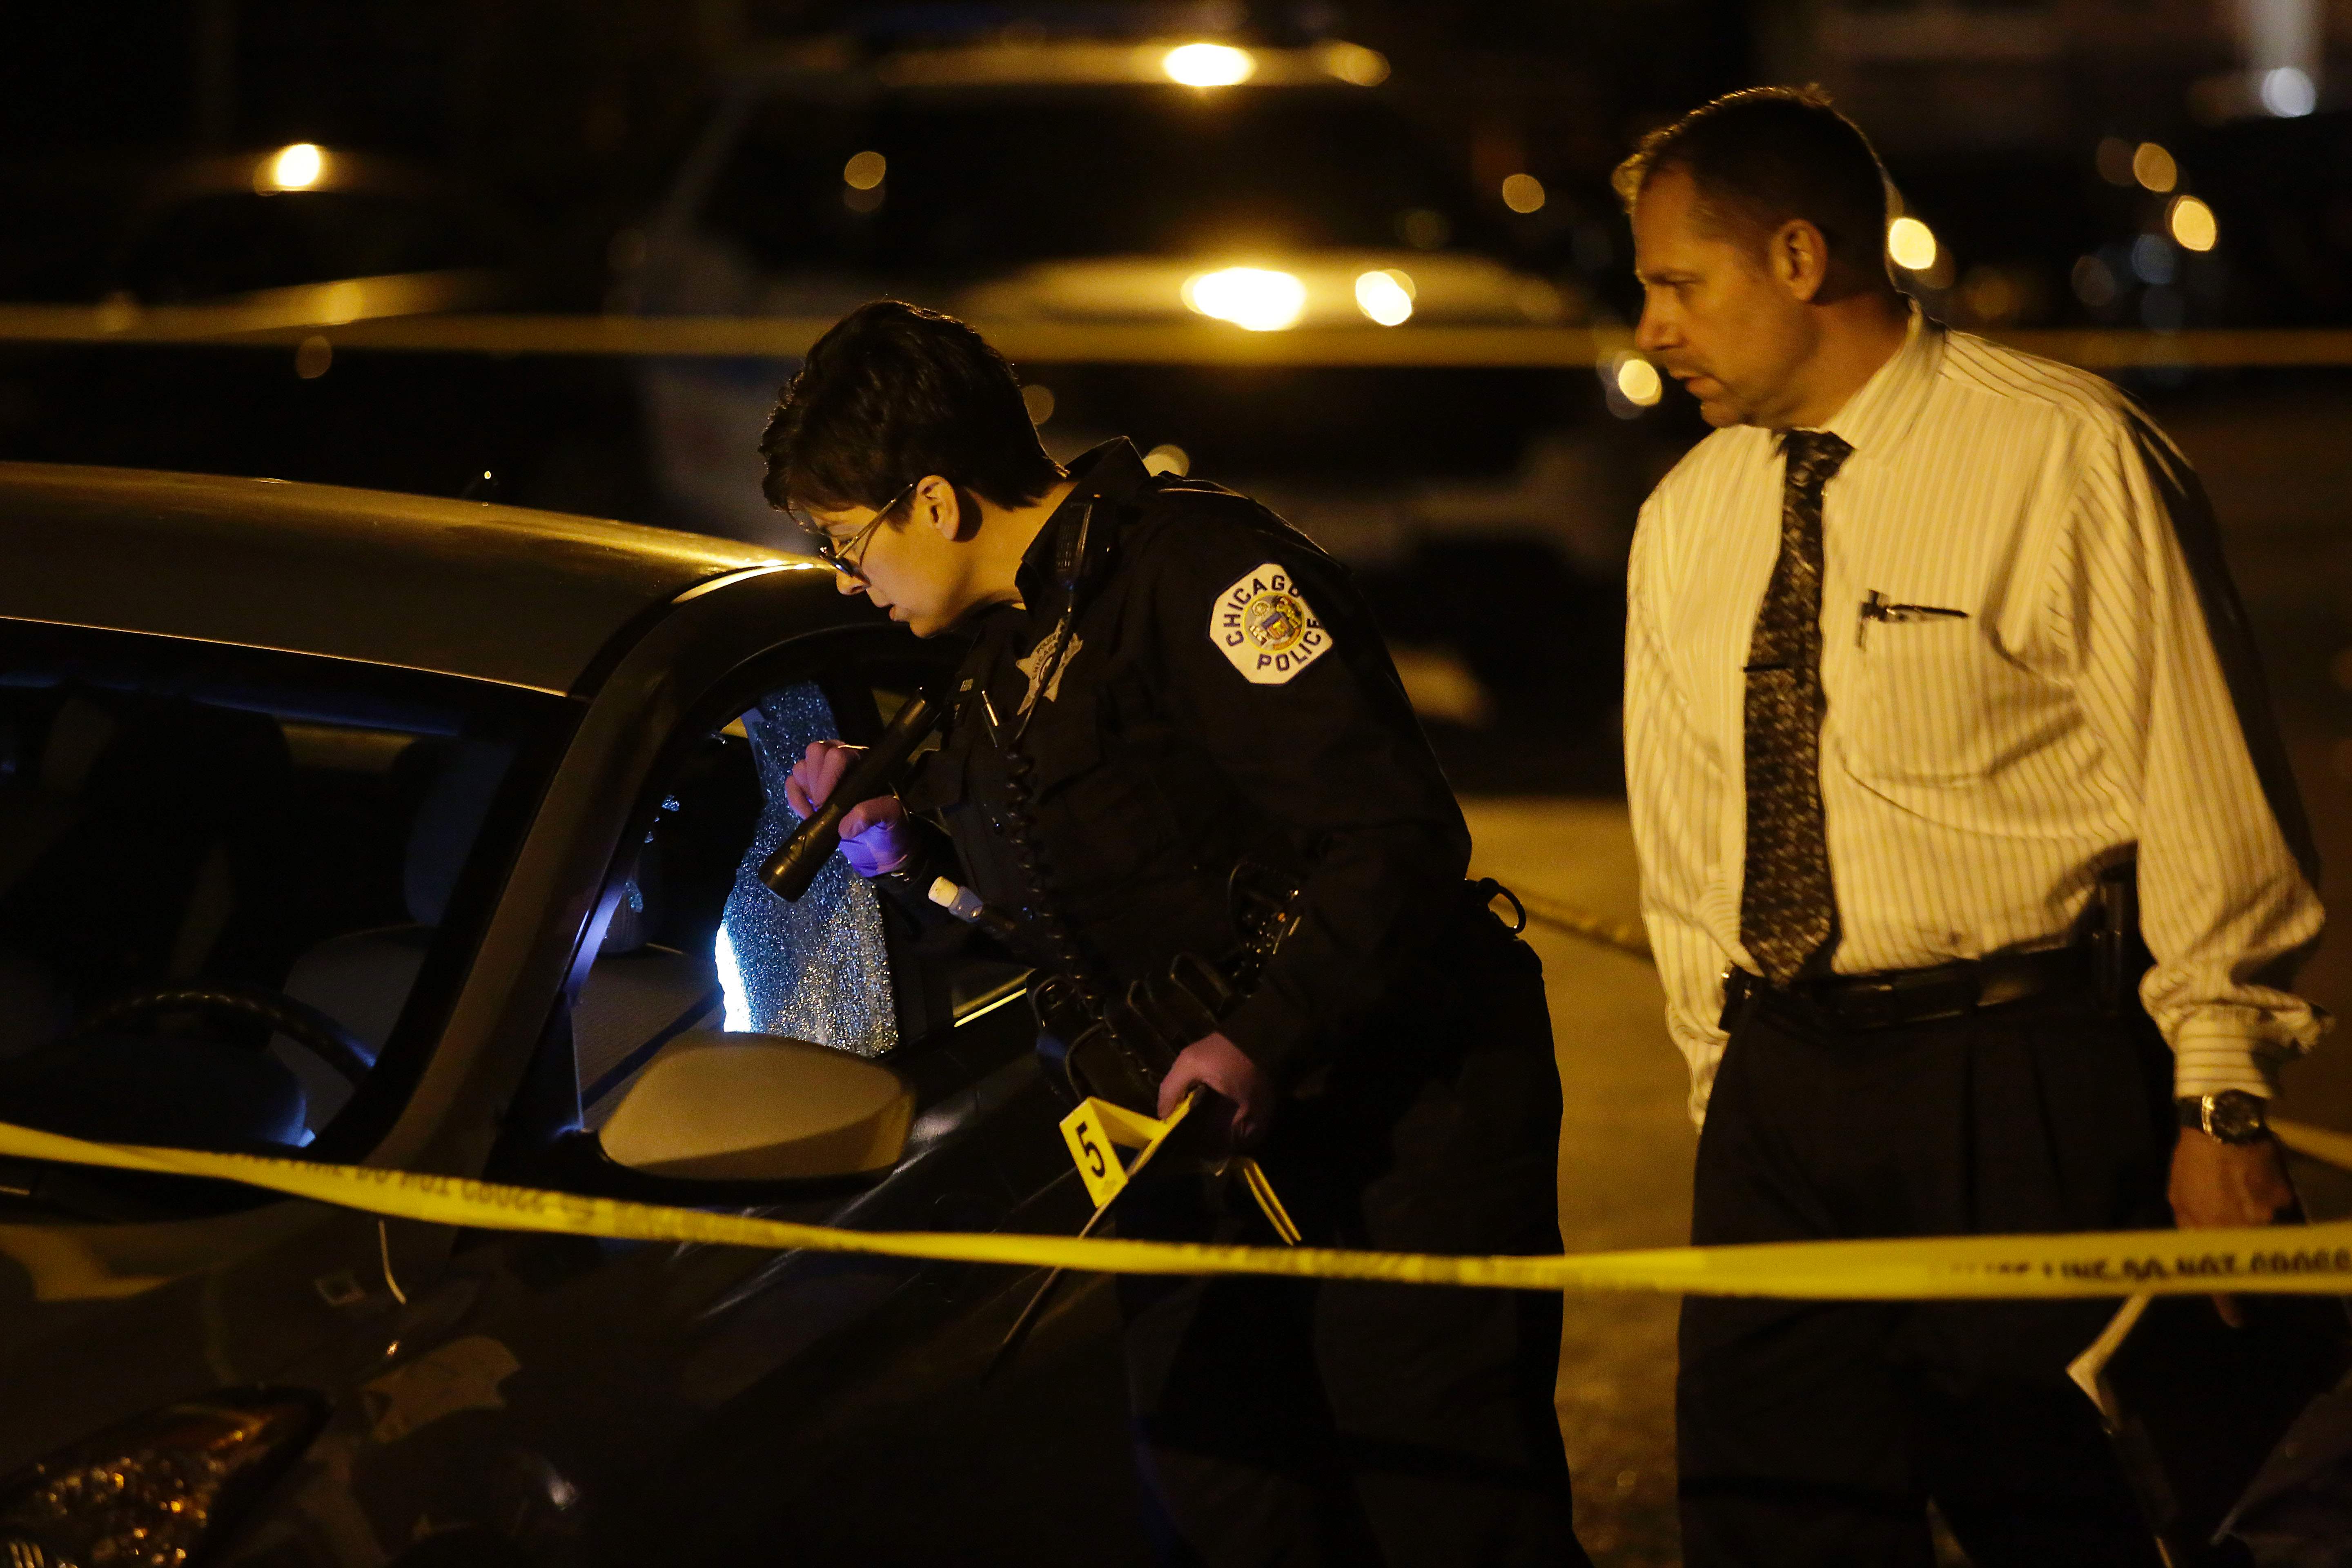 شرطة شيكاغو تجرى تحقيقات حول جريمة القتل